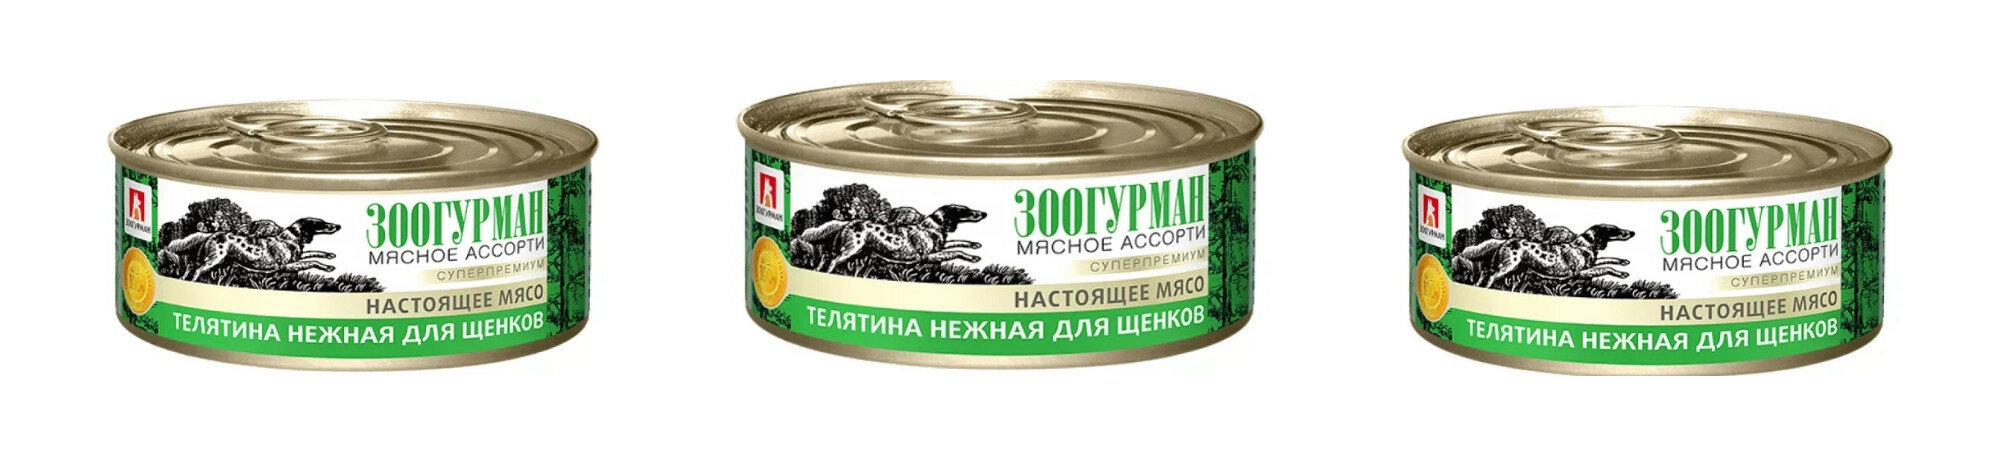 Консервированный корм для щенков Зоогурман, нежная телятина, 100 гр, 3 шт.